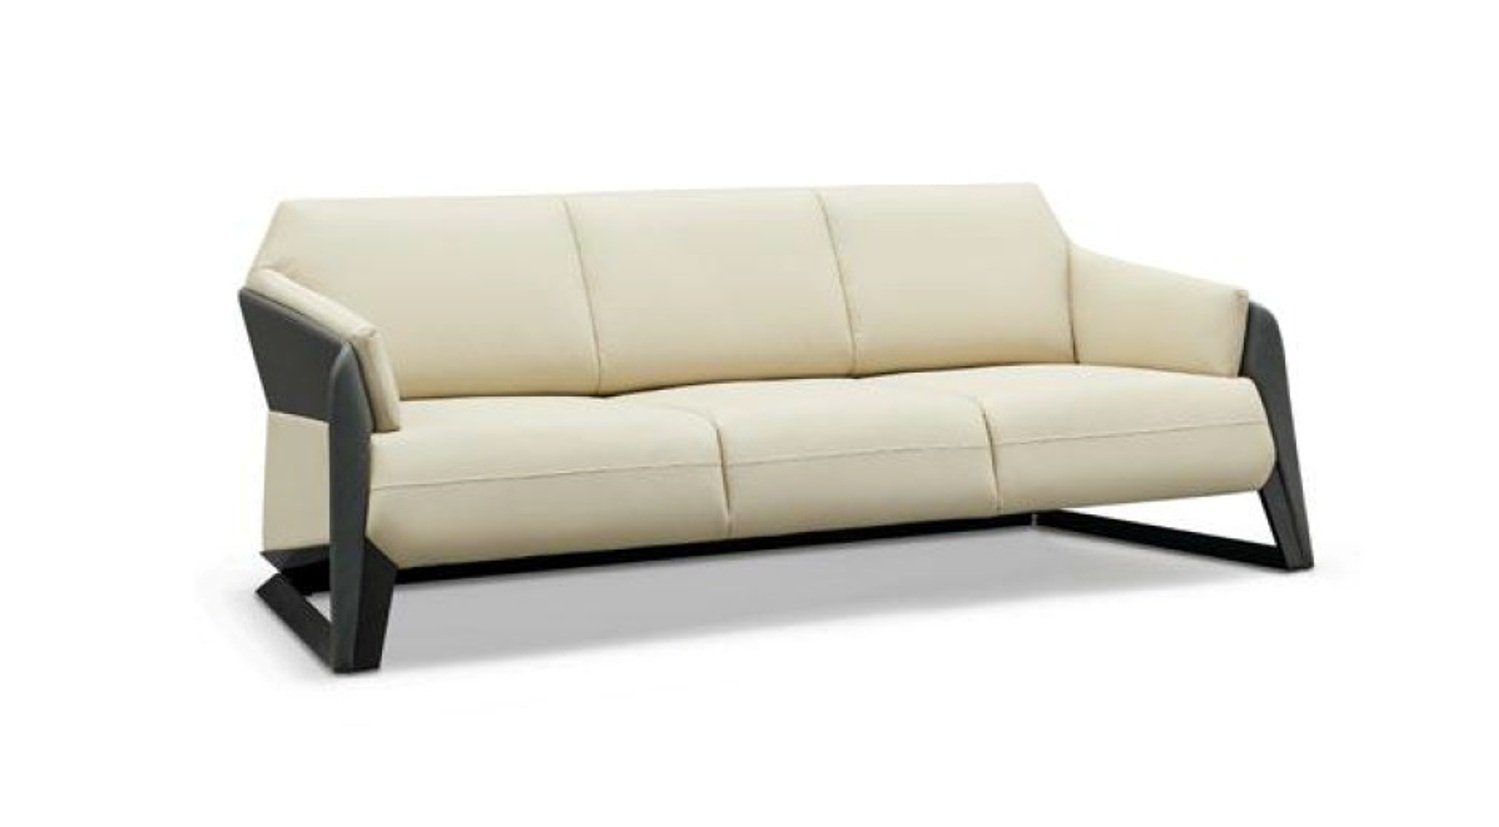 JVmoebel Sofa Weißer Dreisitzer Moderne Couch in Polster Europe Made Ledermöbel Neu, 3-Sitzer